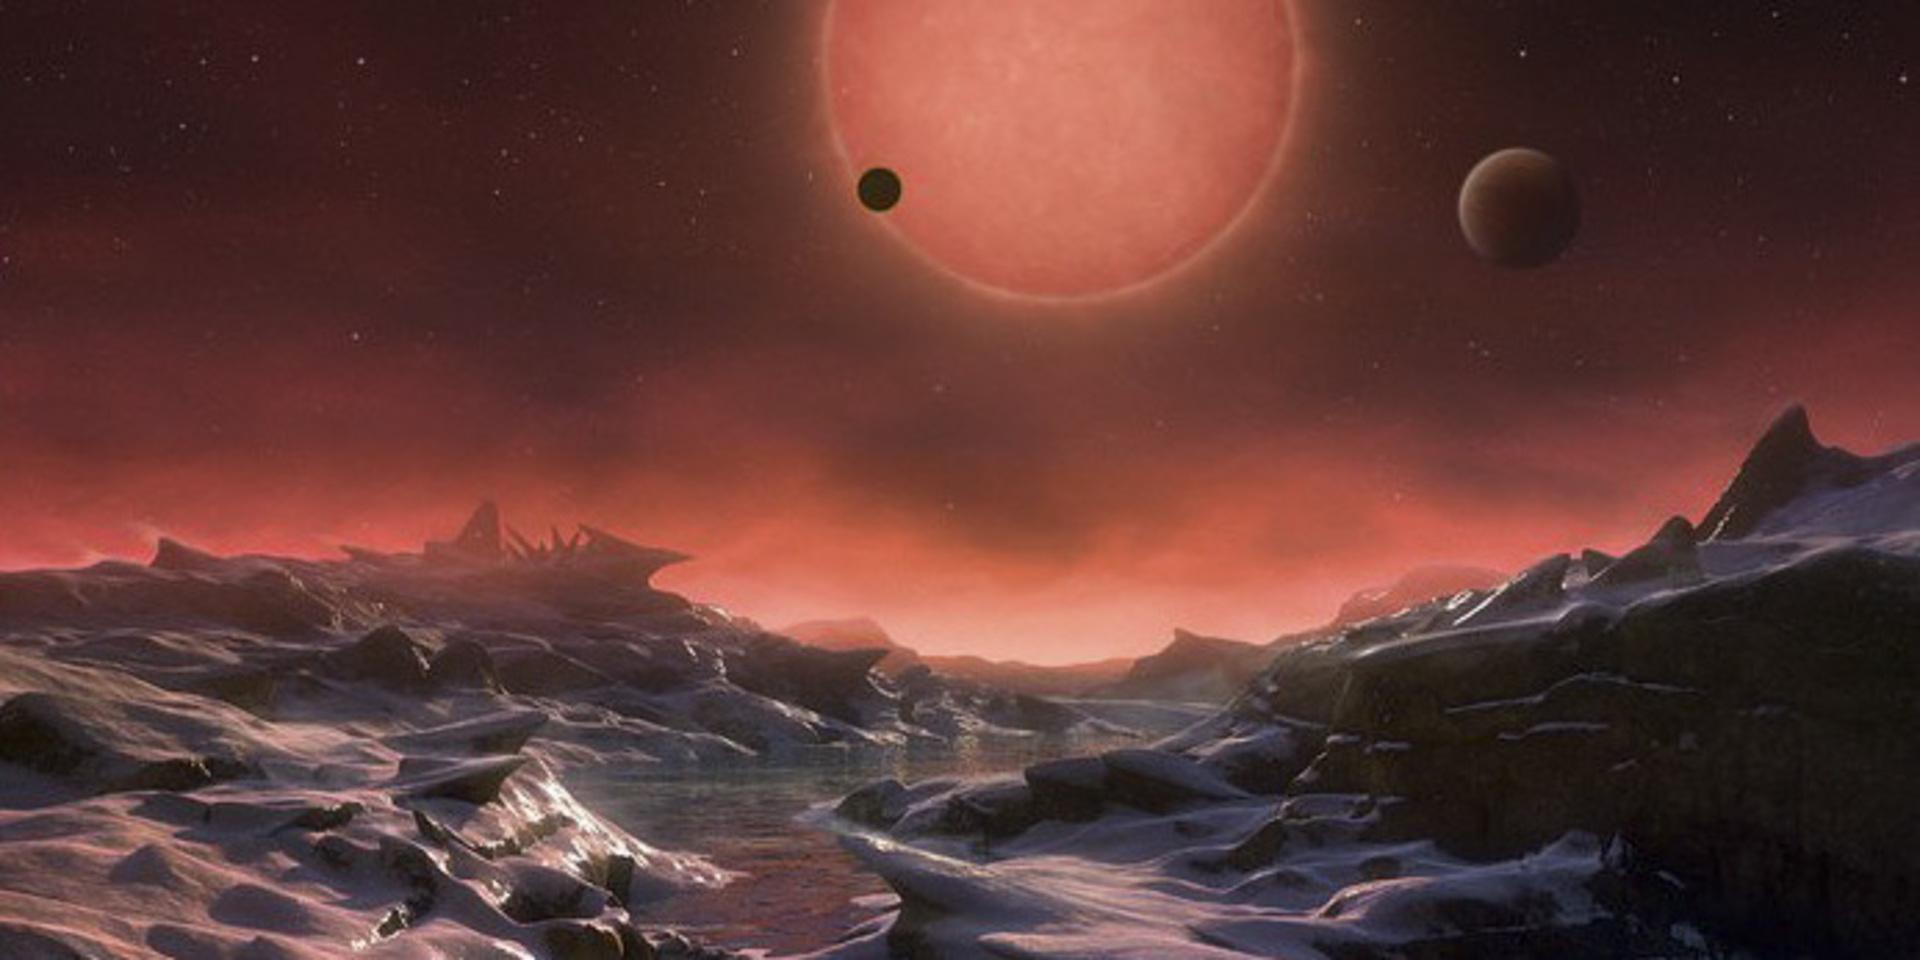 Brittiska forskare har upptäckt en exoplanet, K2-18 b, som har atmosfär bestående av vattenånga, vilket av många anses vara en förutsättning för liv. På bilden en rekonstruktion av hur det kan se ut på en exoplanet.